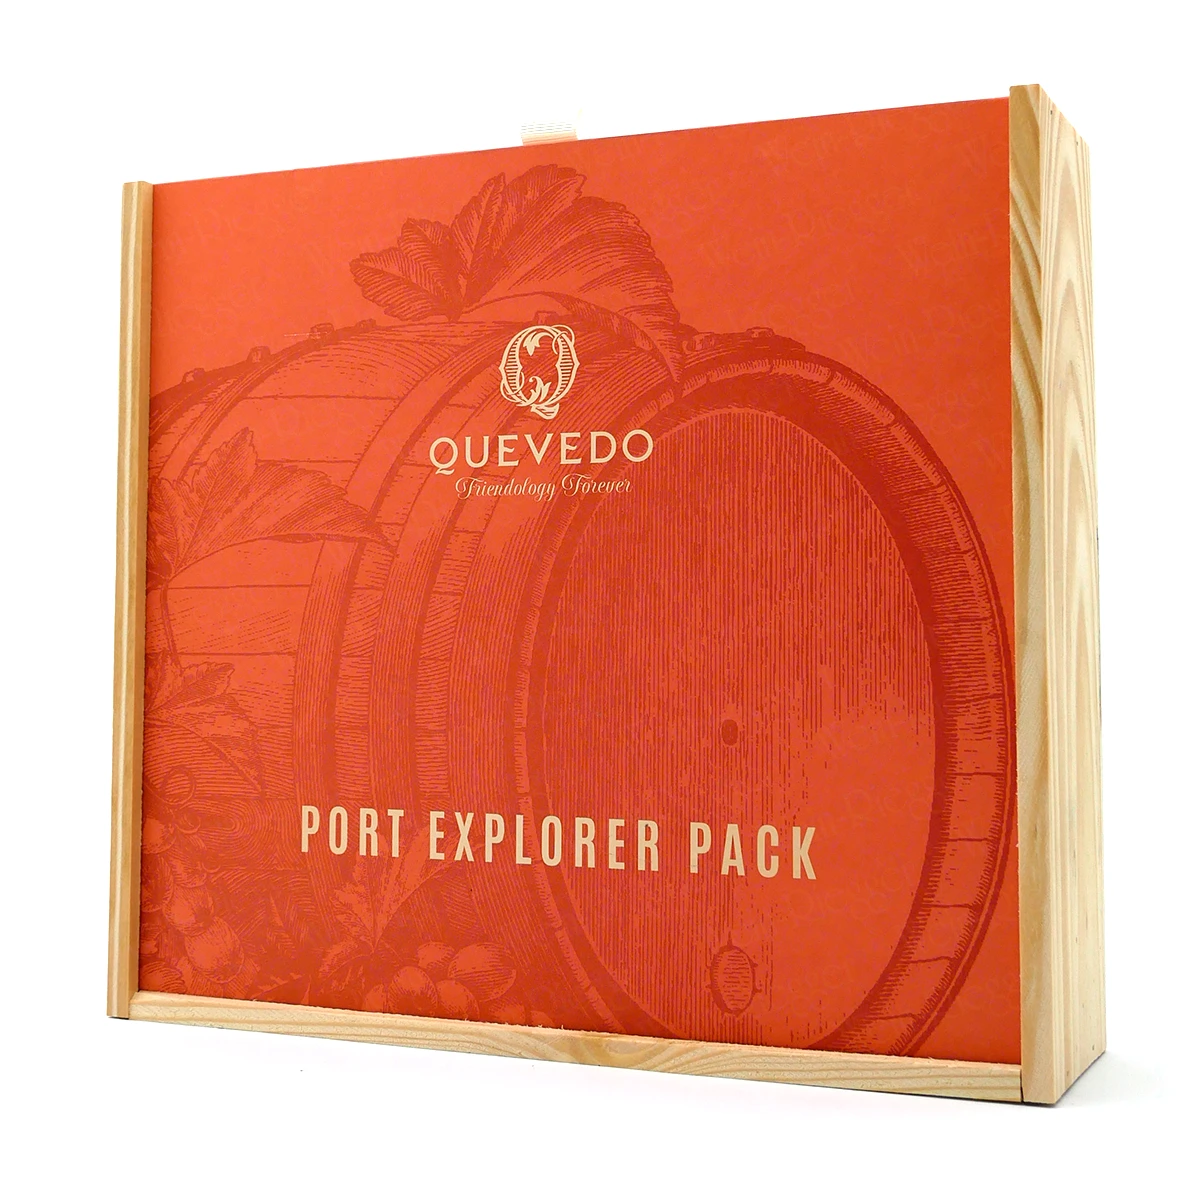 Port Explorer Pack (4 x 0,375 L) - Quevedo Porto